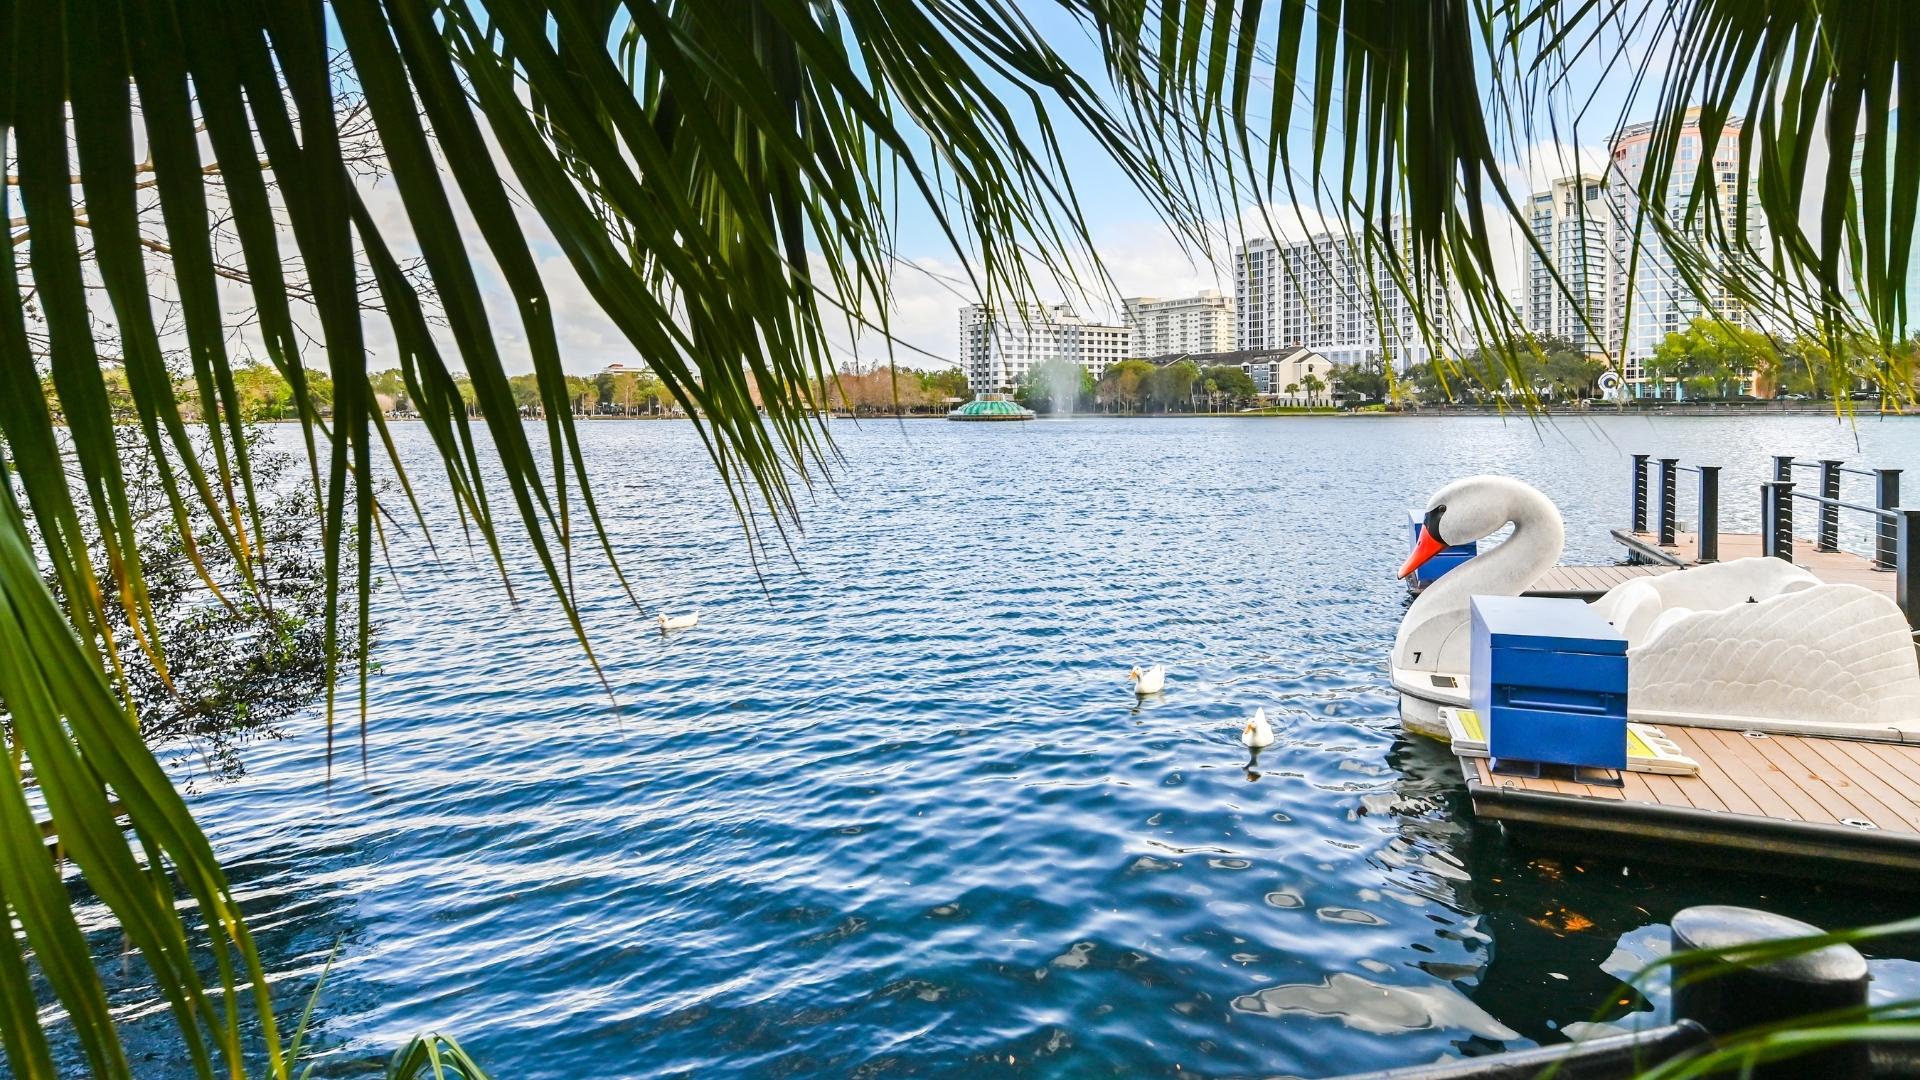 Plan Your Visit to Orlando Florida at the Lake